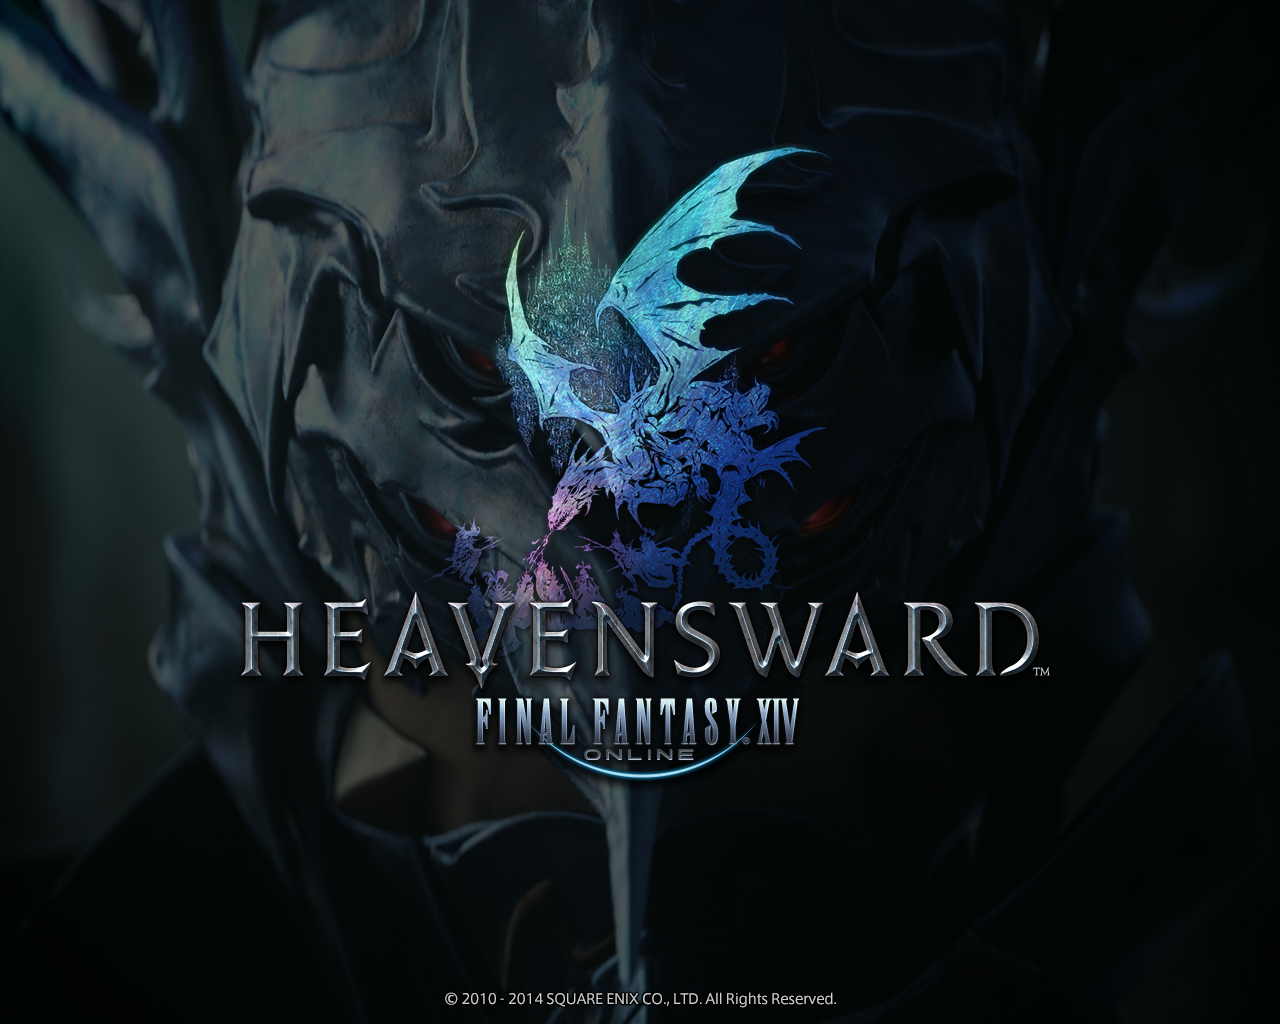 Final Fantasy Xiv Heavensward Coming Spring 15 Markee Dragon News Guides